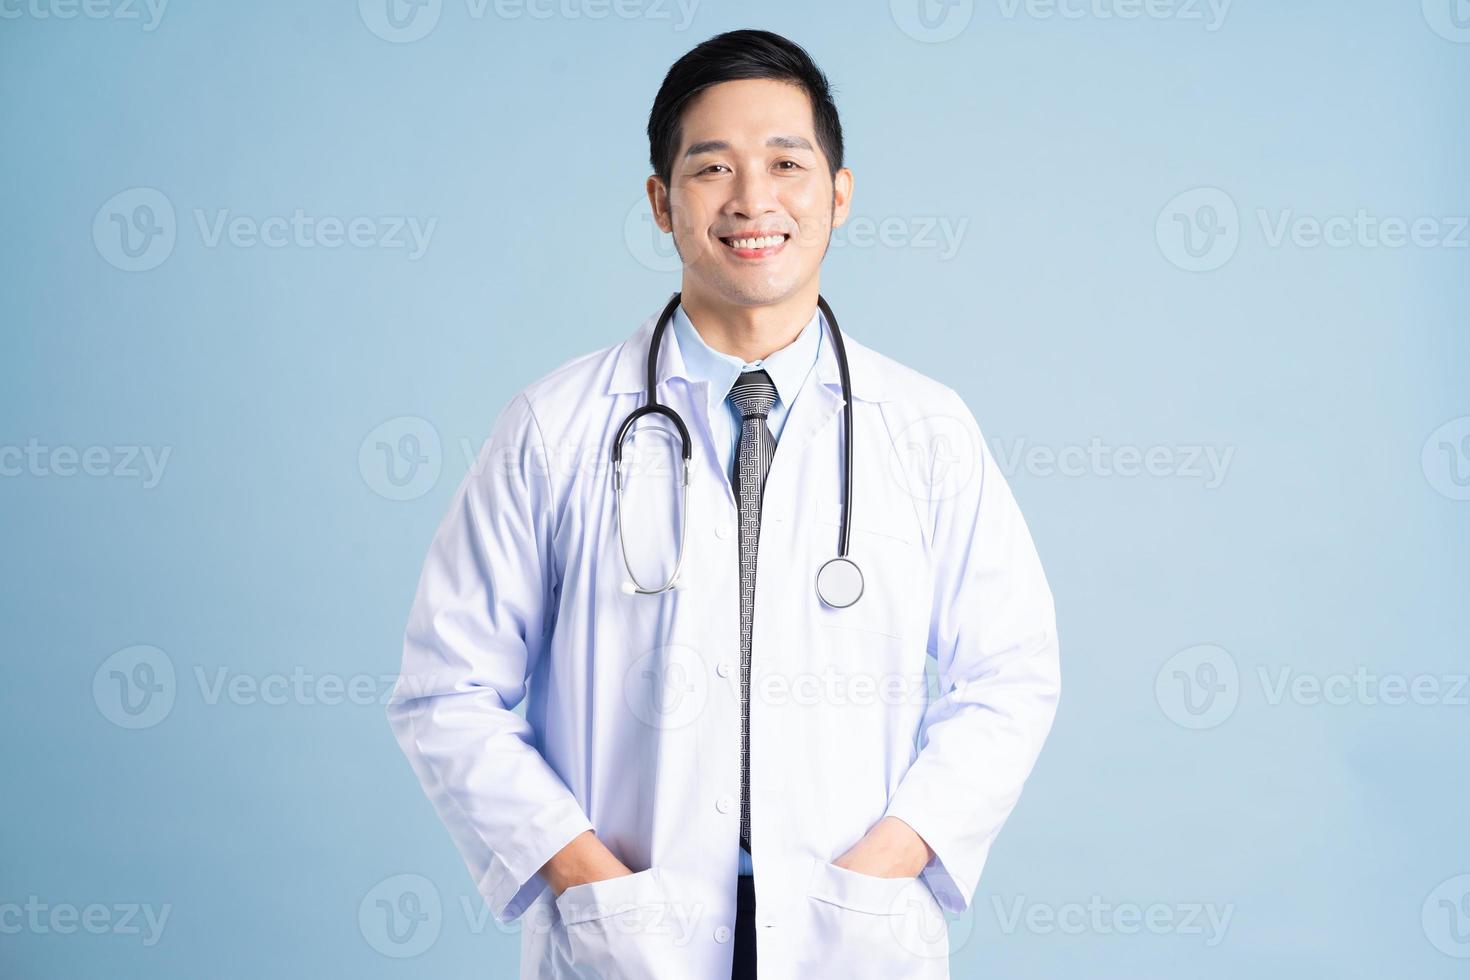 asiático masculino médico retrato en azul antecedentes foto